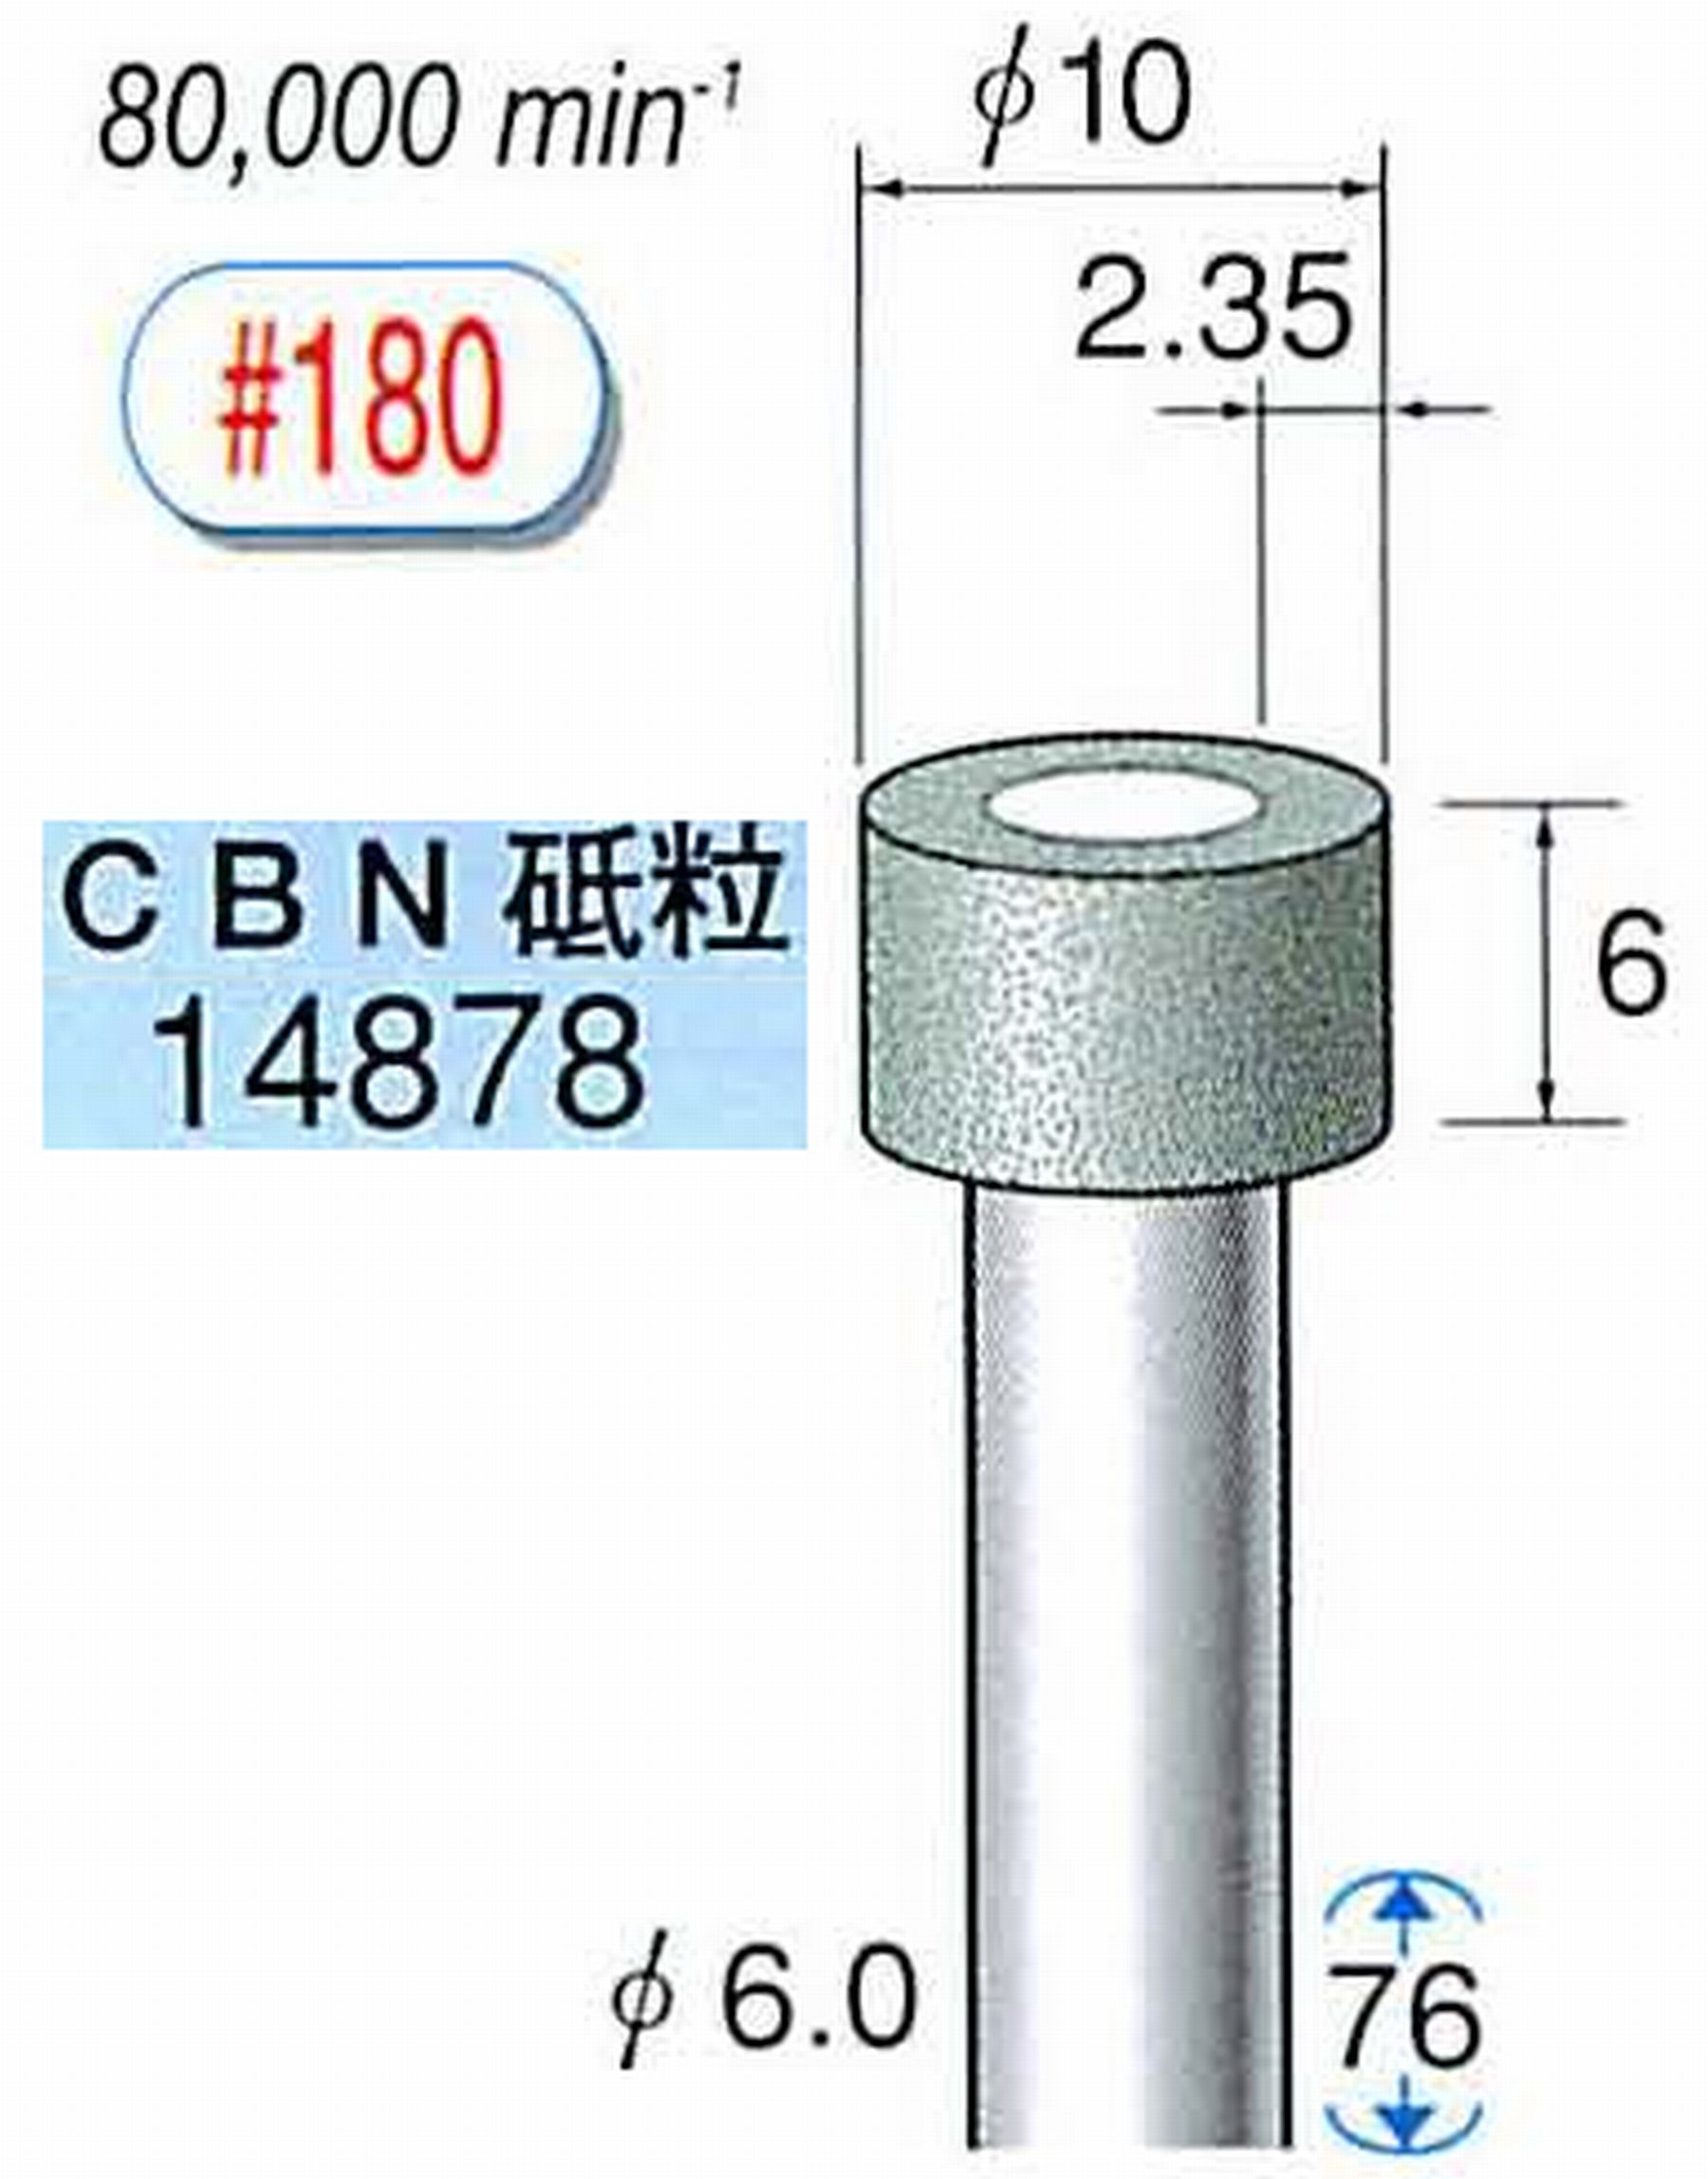 ナカニシ/NAKANISHI ビトリファイドダイヤモンド砥石 CBN砥粒 軸径(シャンク)φ6.0mm 14878